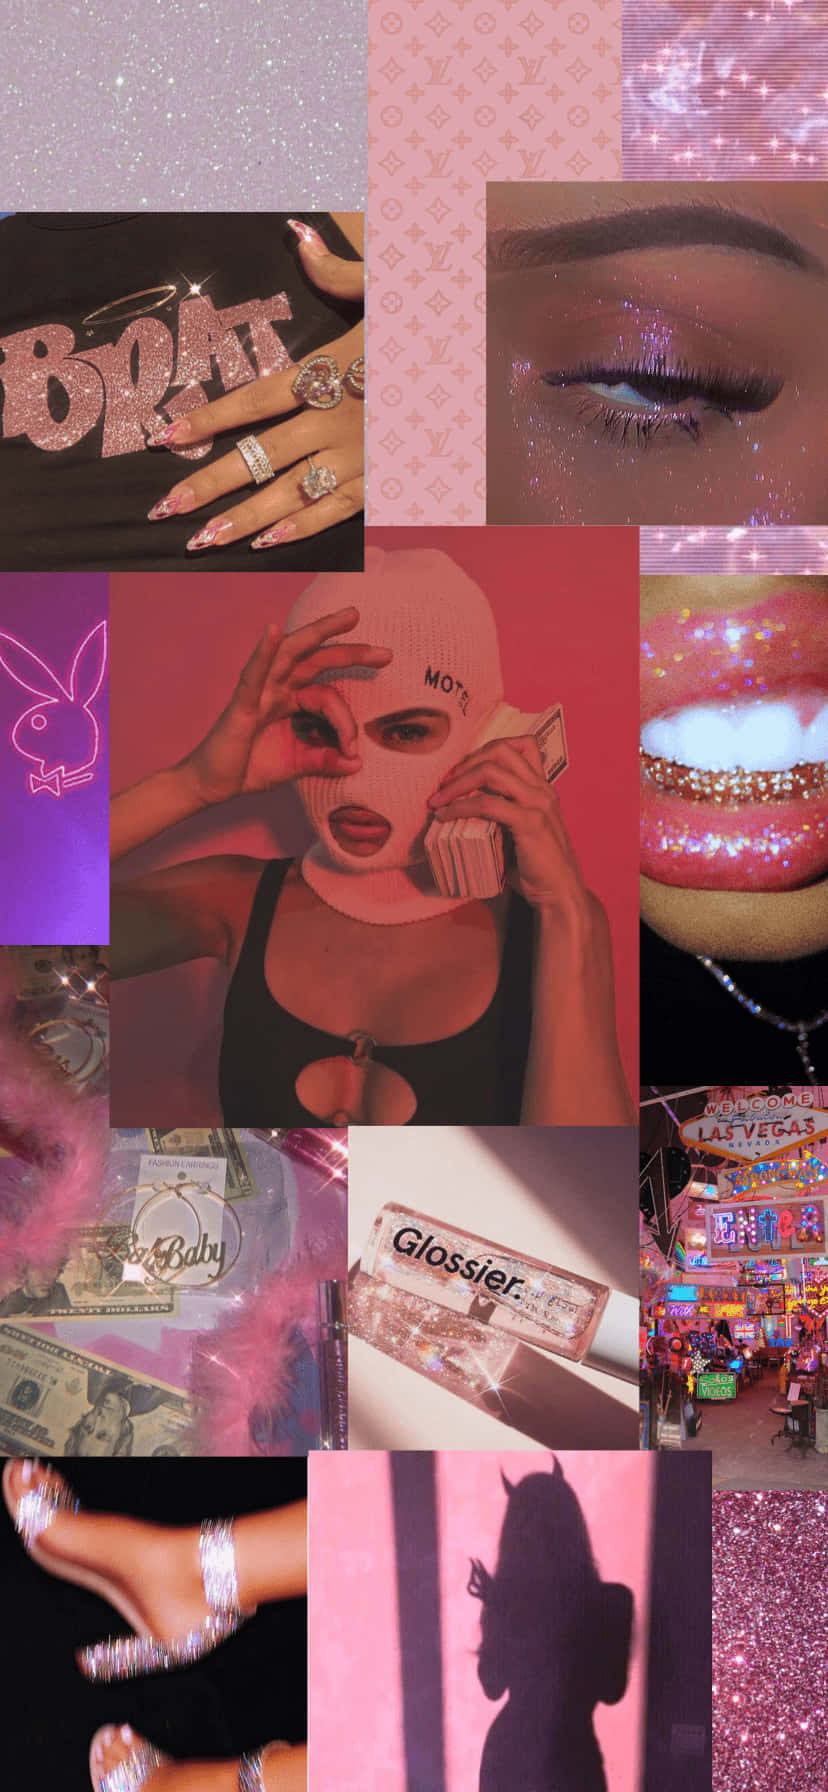 Einecollage Von Bildern Von Menschen Mit Pinkem Make-up. Wallpaper